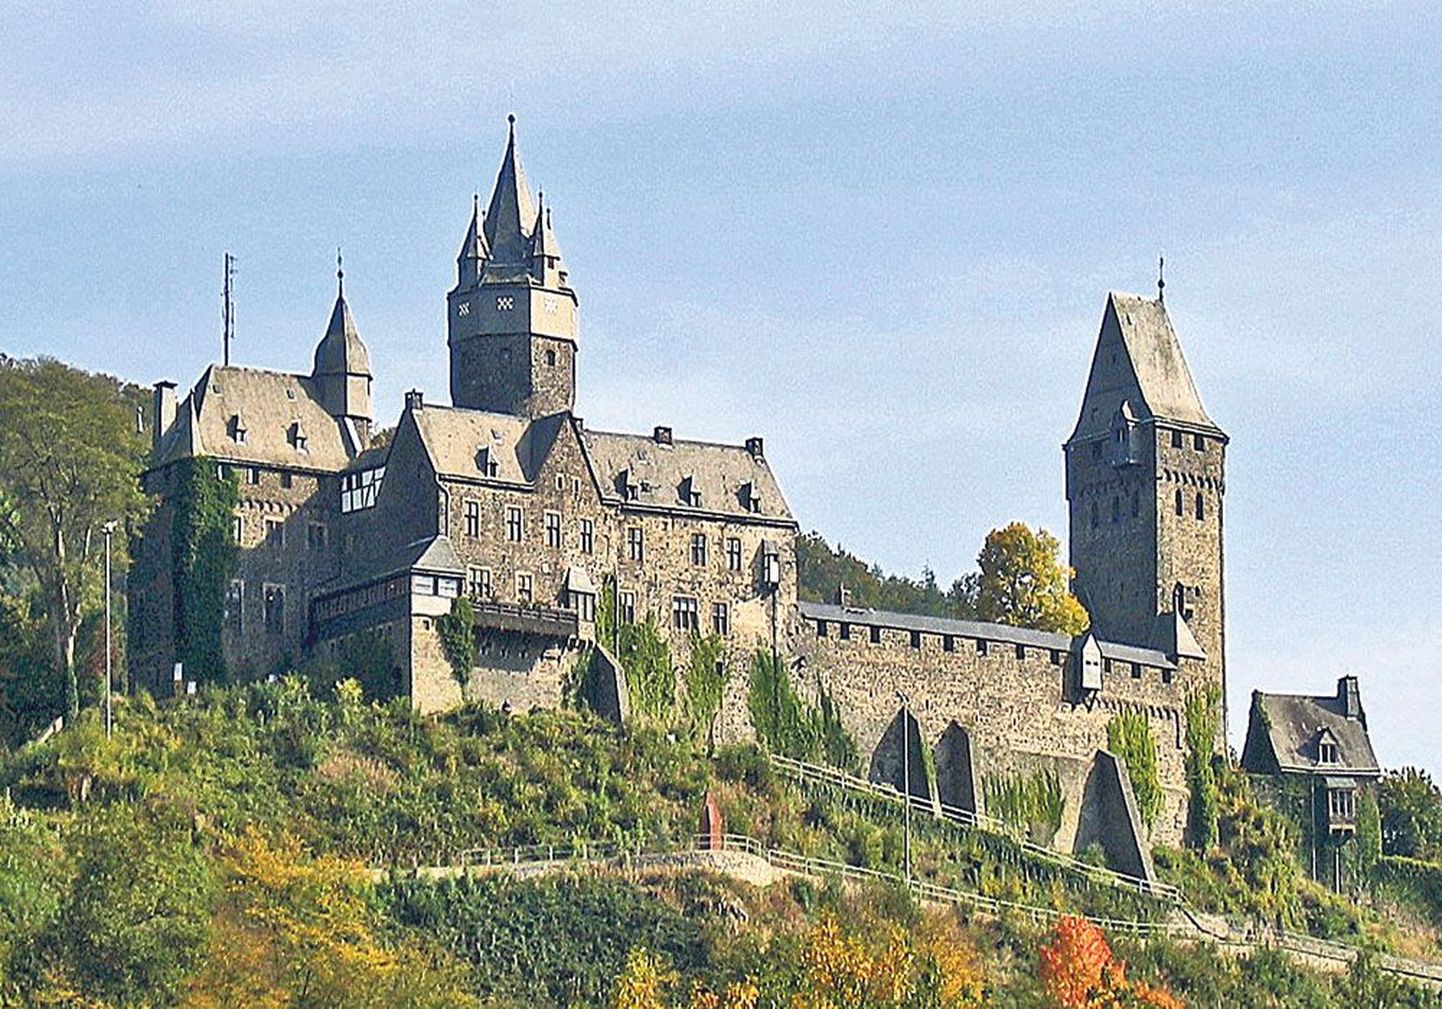 Maailma esimese hosteli avas 1912. aastal Saksamaal Altena lossis Richard Schirrmann vaesematele linnanoortele.